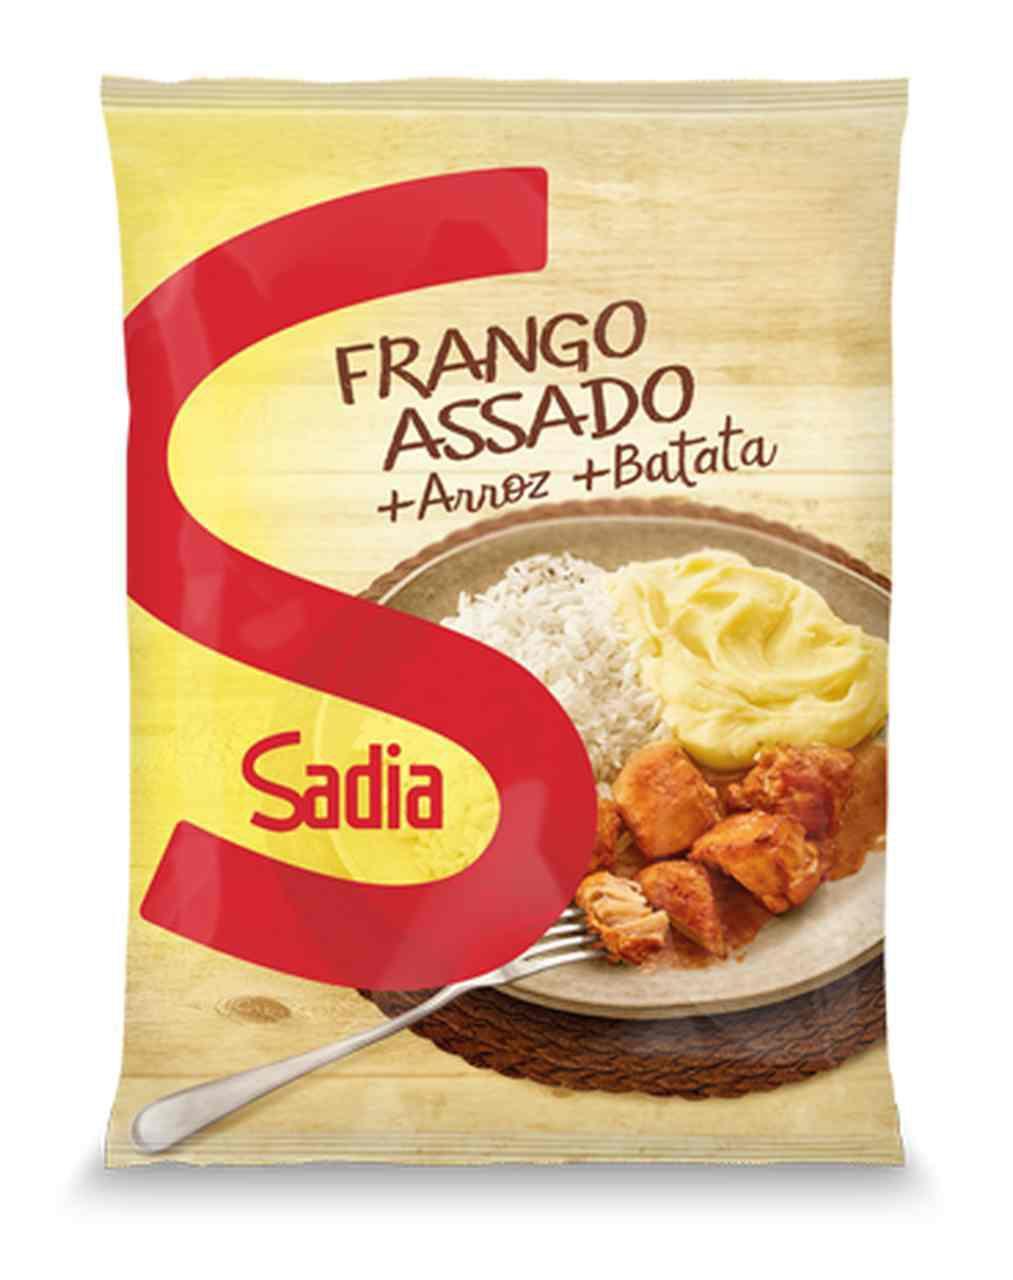 Frango Assado, Arroz E Pure De Batata Sadia 350g - Prato Pronto - Magazine  Luiza